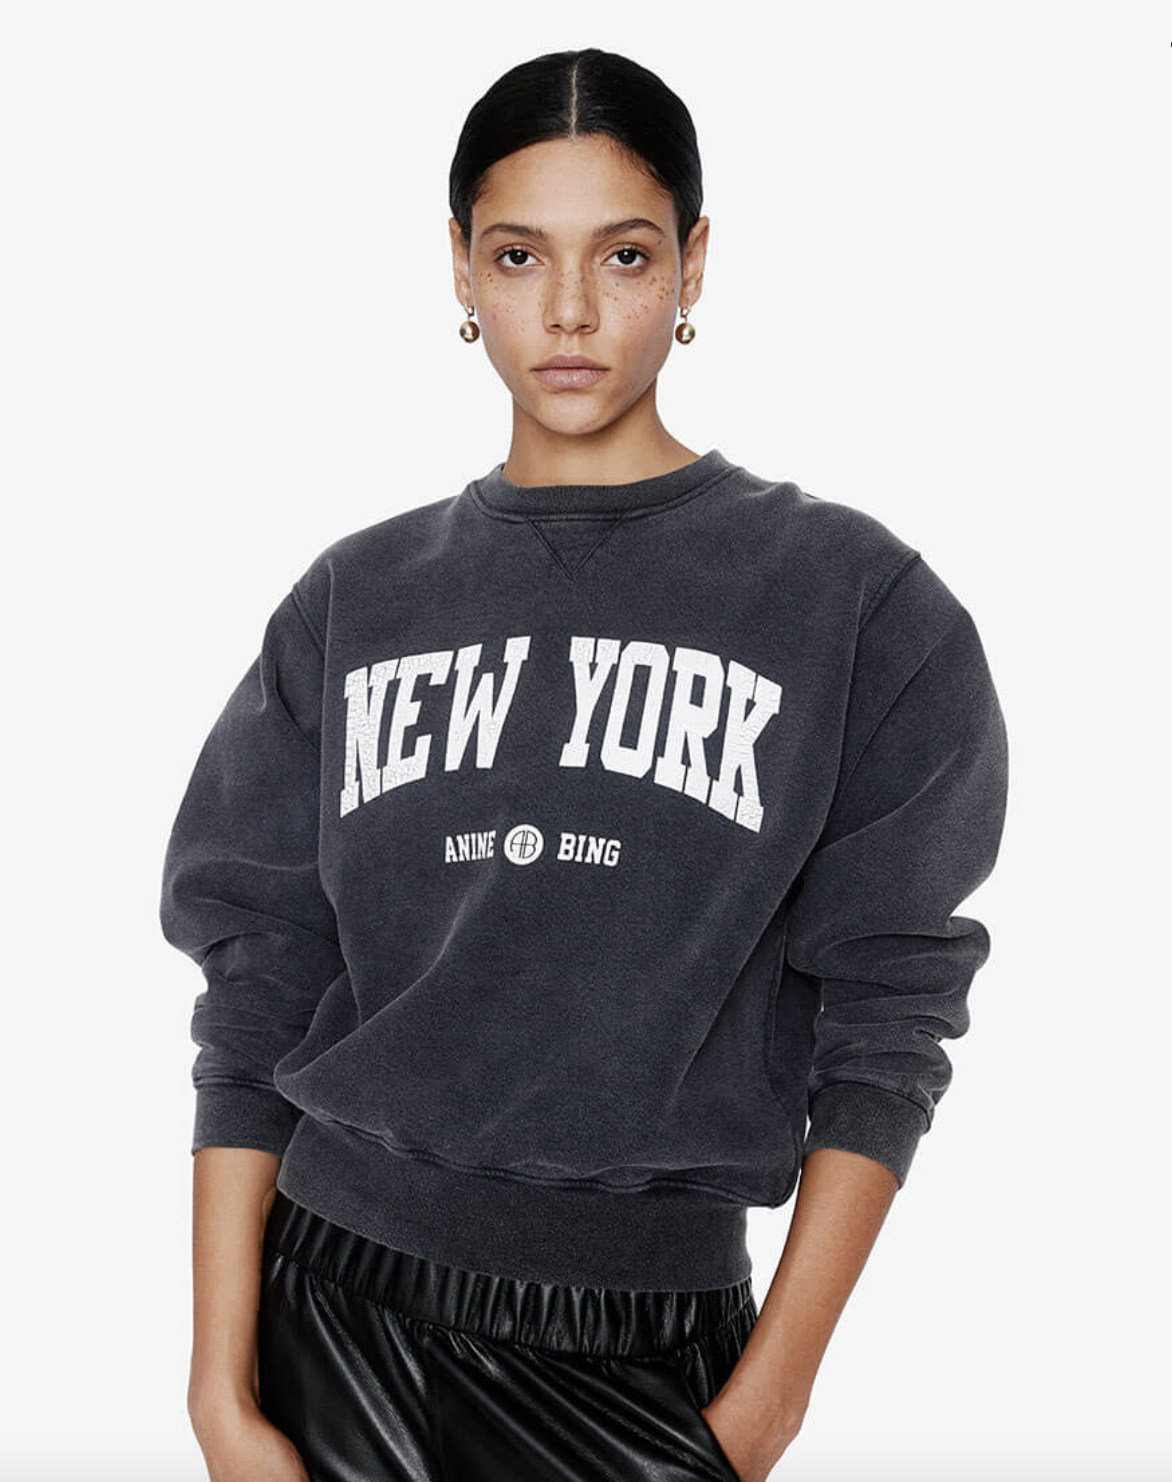 Anine Bing New York sweatshirt.